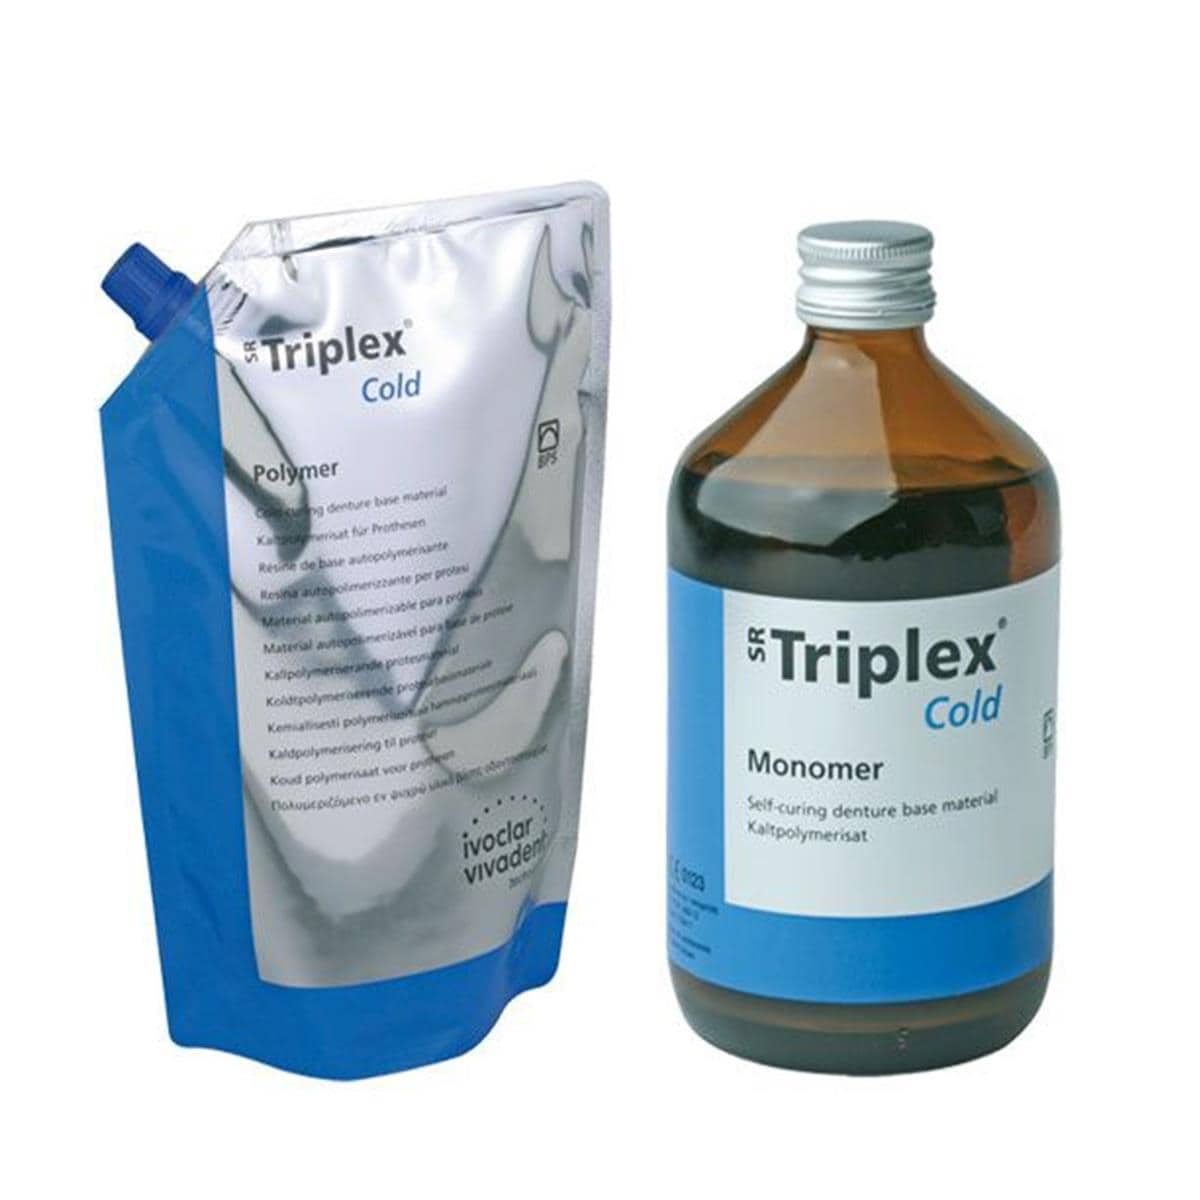 Triplex Cold IVOCLAR - La portion de 1 kg + 500 ml - 36 PV